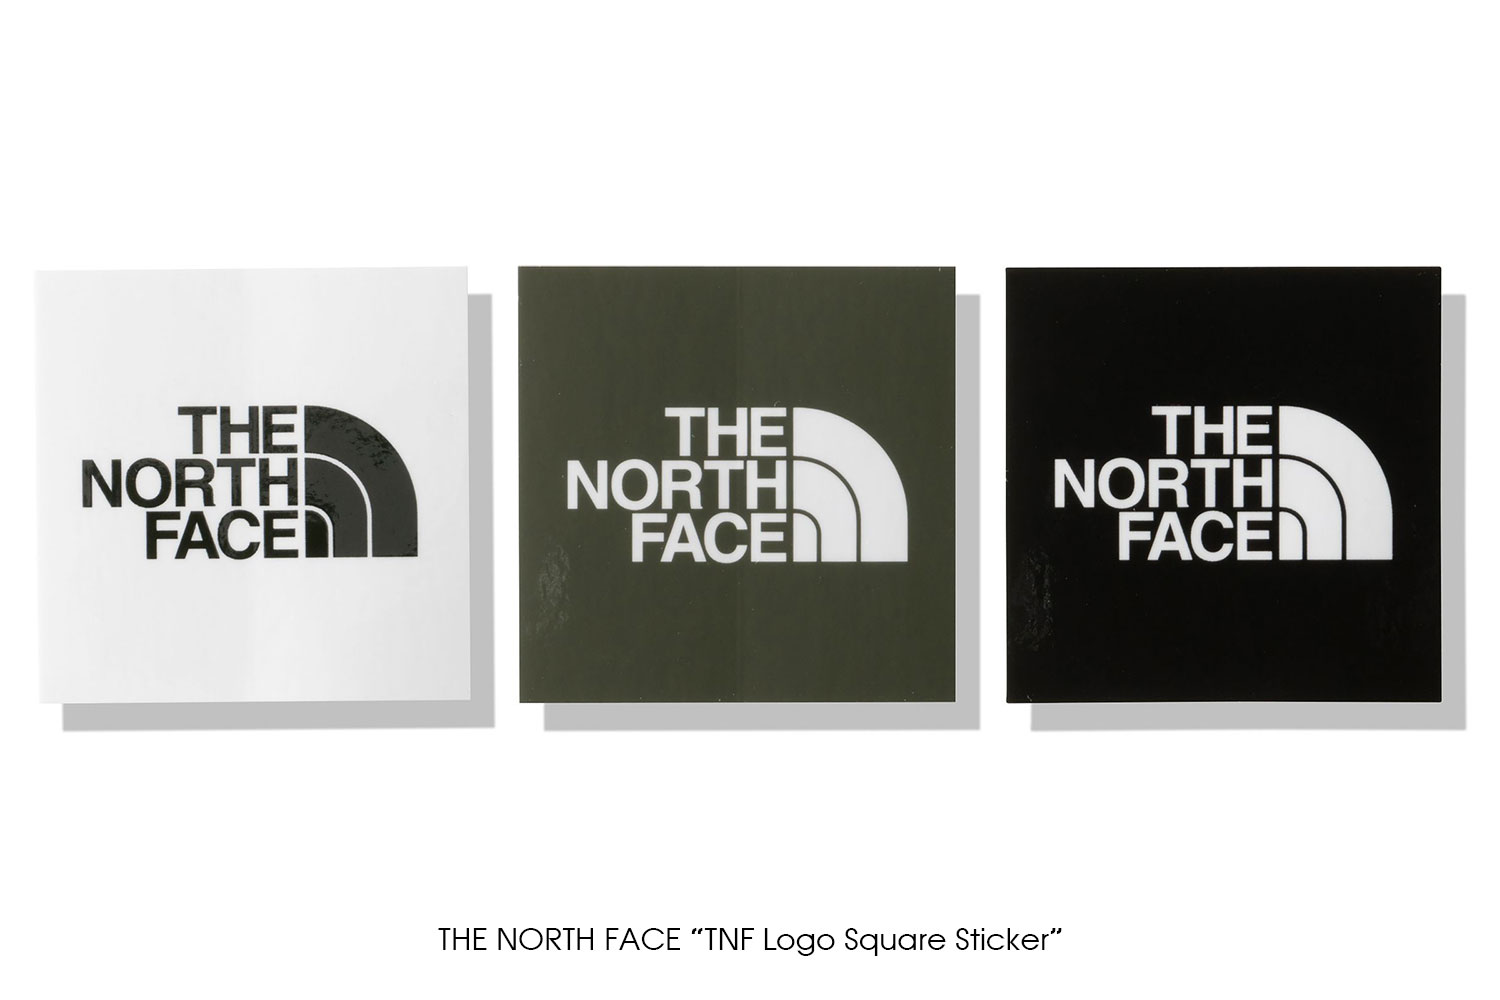 THE NORTH FACE "TNF Square Logo Sticker"